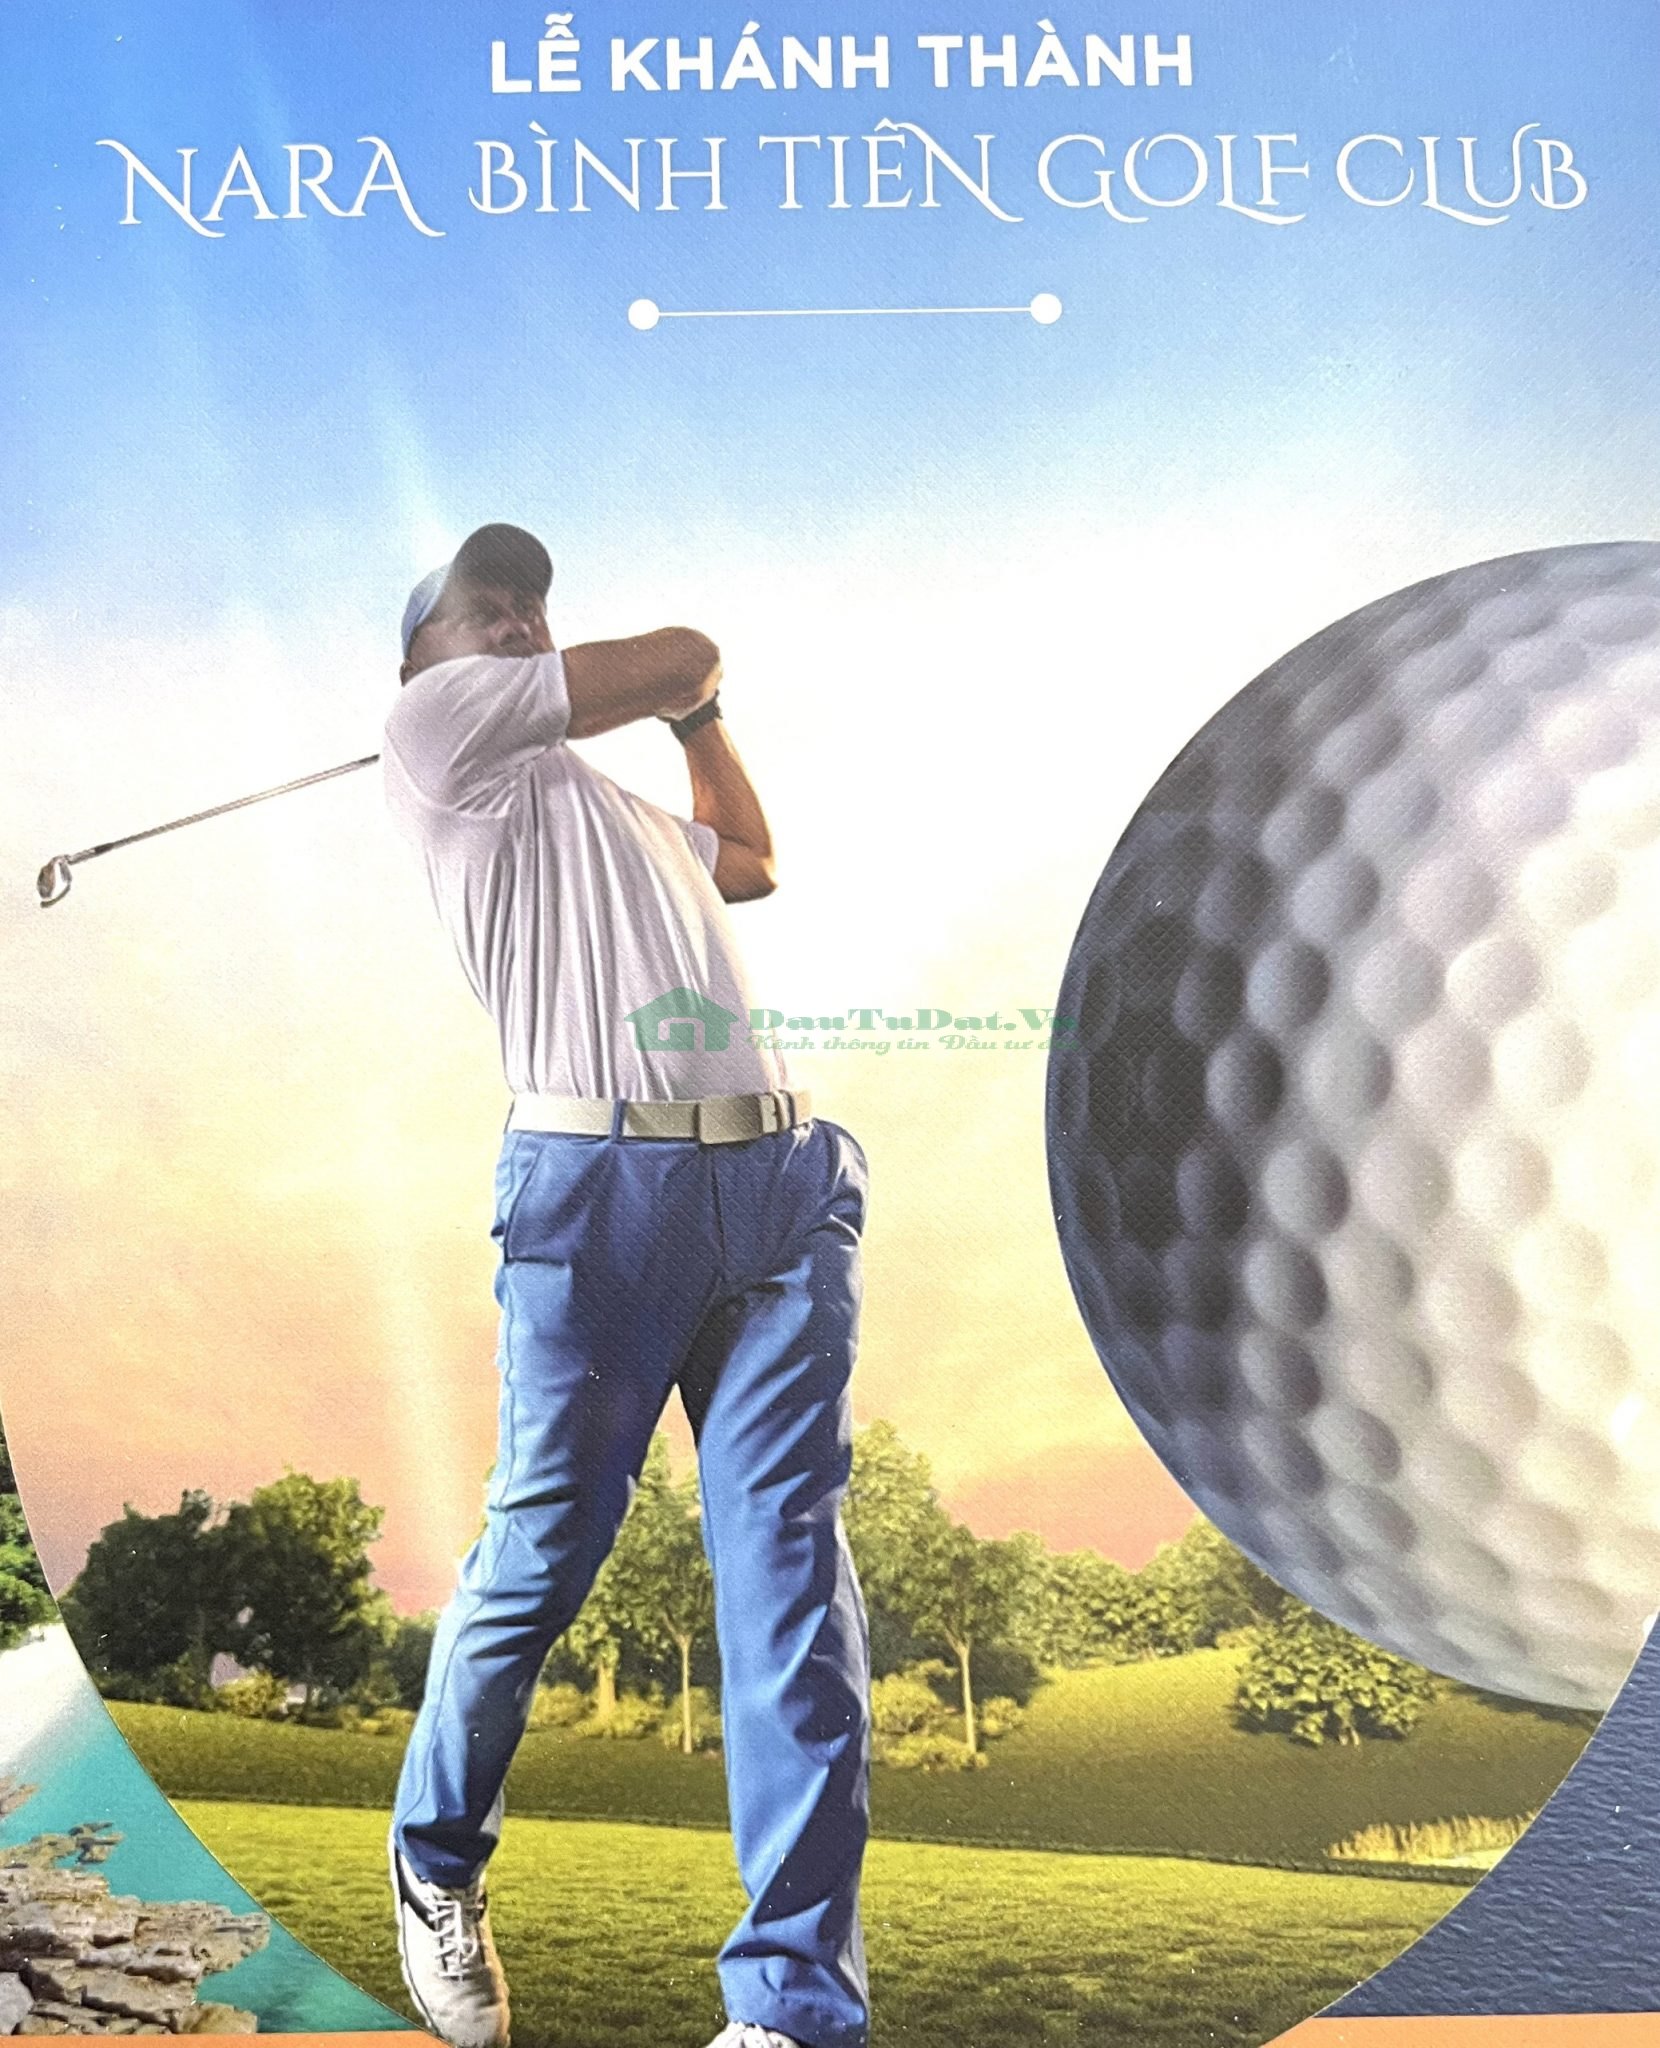 Golf Club Nara Bình Tiên Ninh Thuận